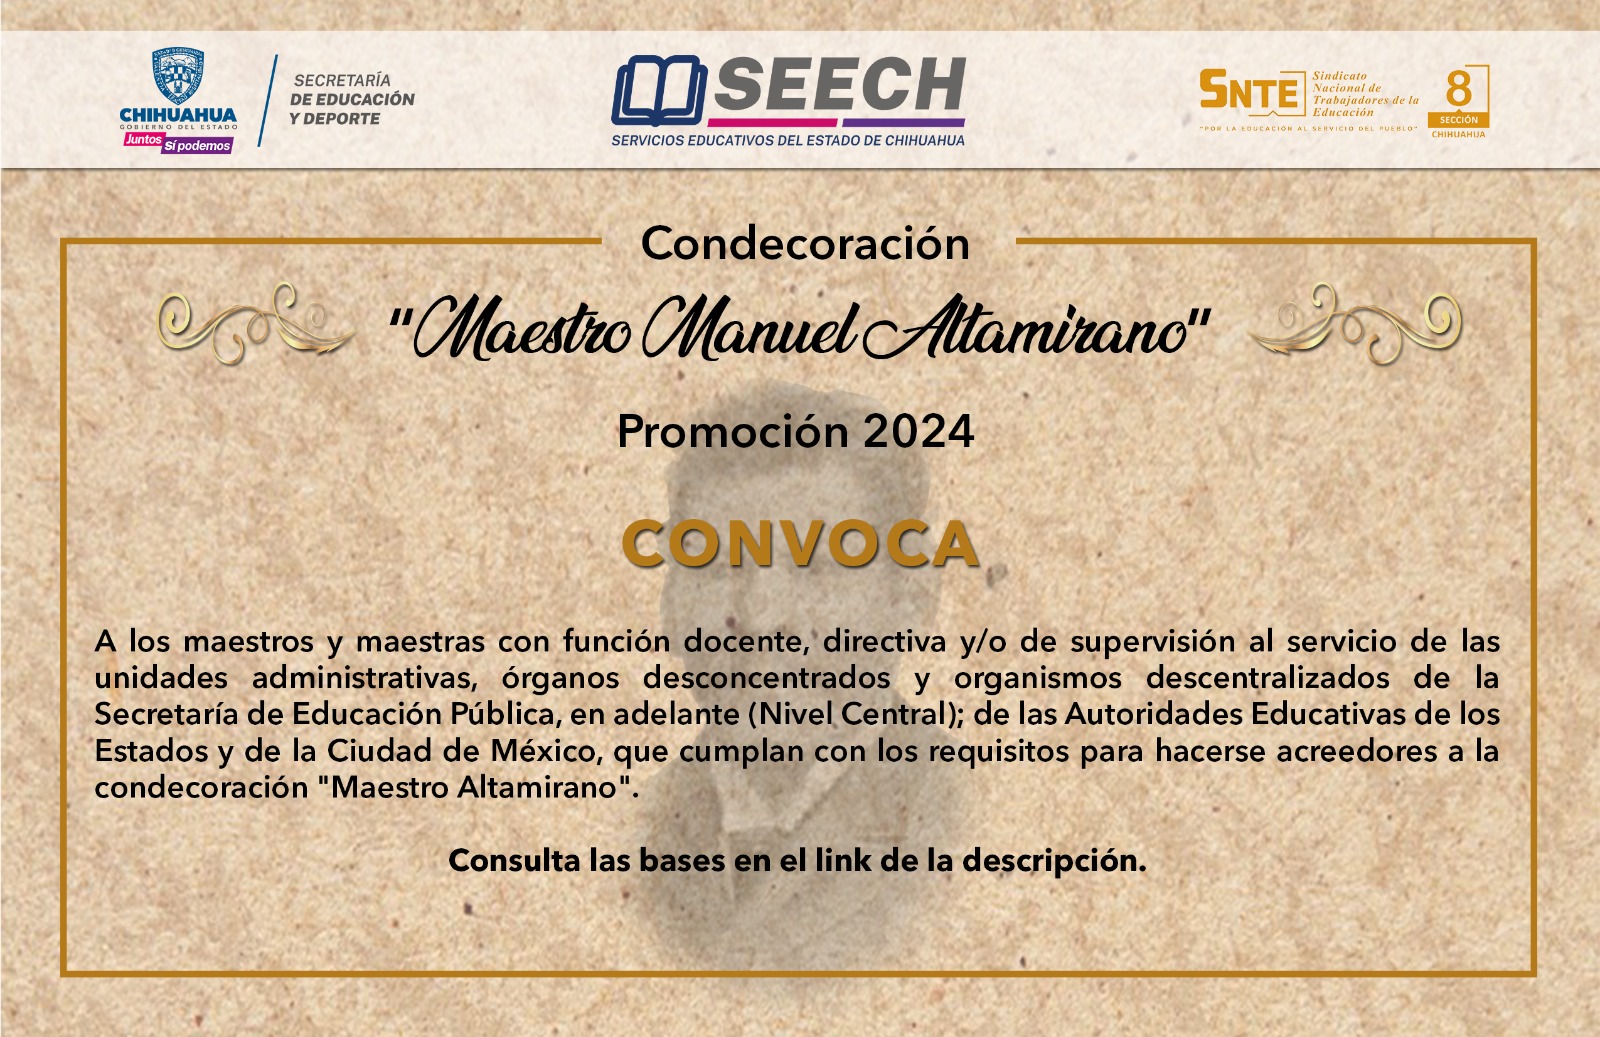 CONDECORACIÓN MAESTRO MANUEL ALTAMIRANO 